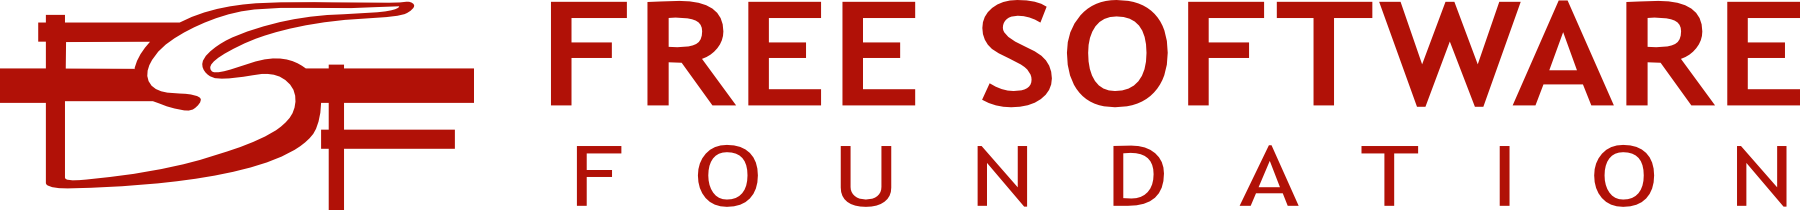 Logo Fsf.org